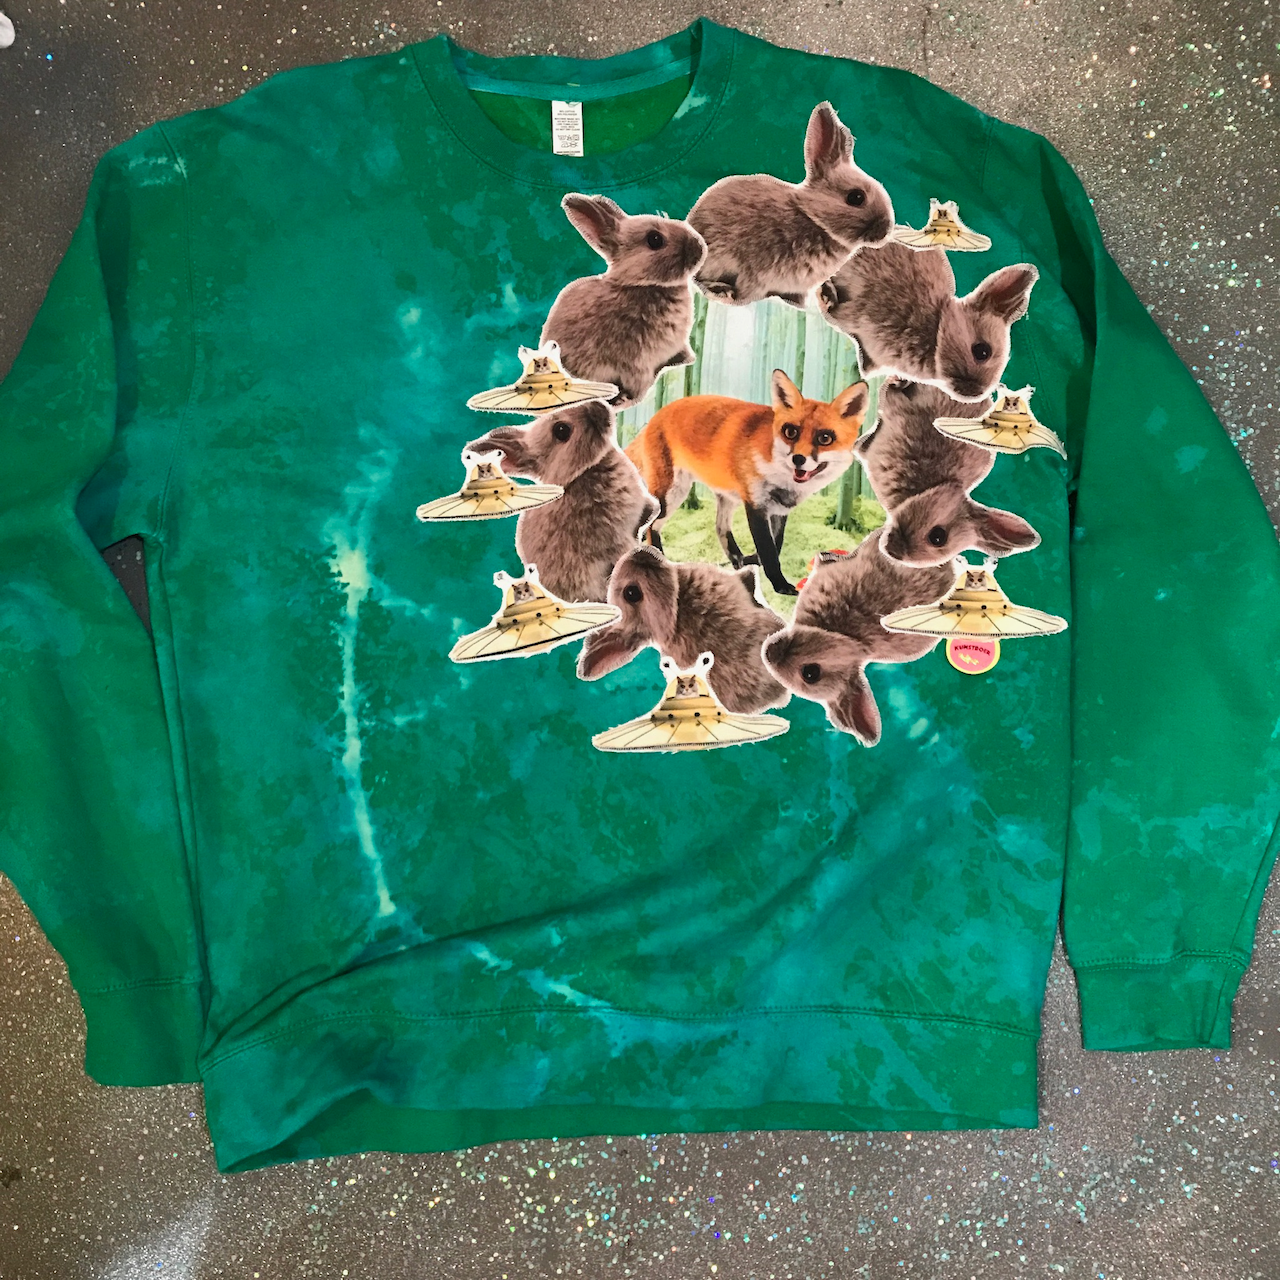 Sweatshirt - 2XL - Green with Bunnies and Fox